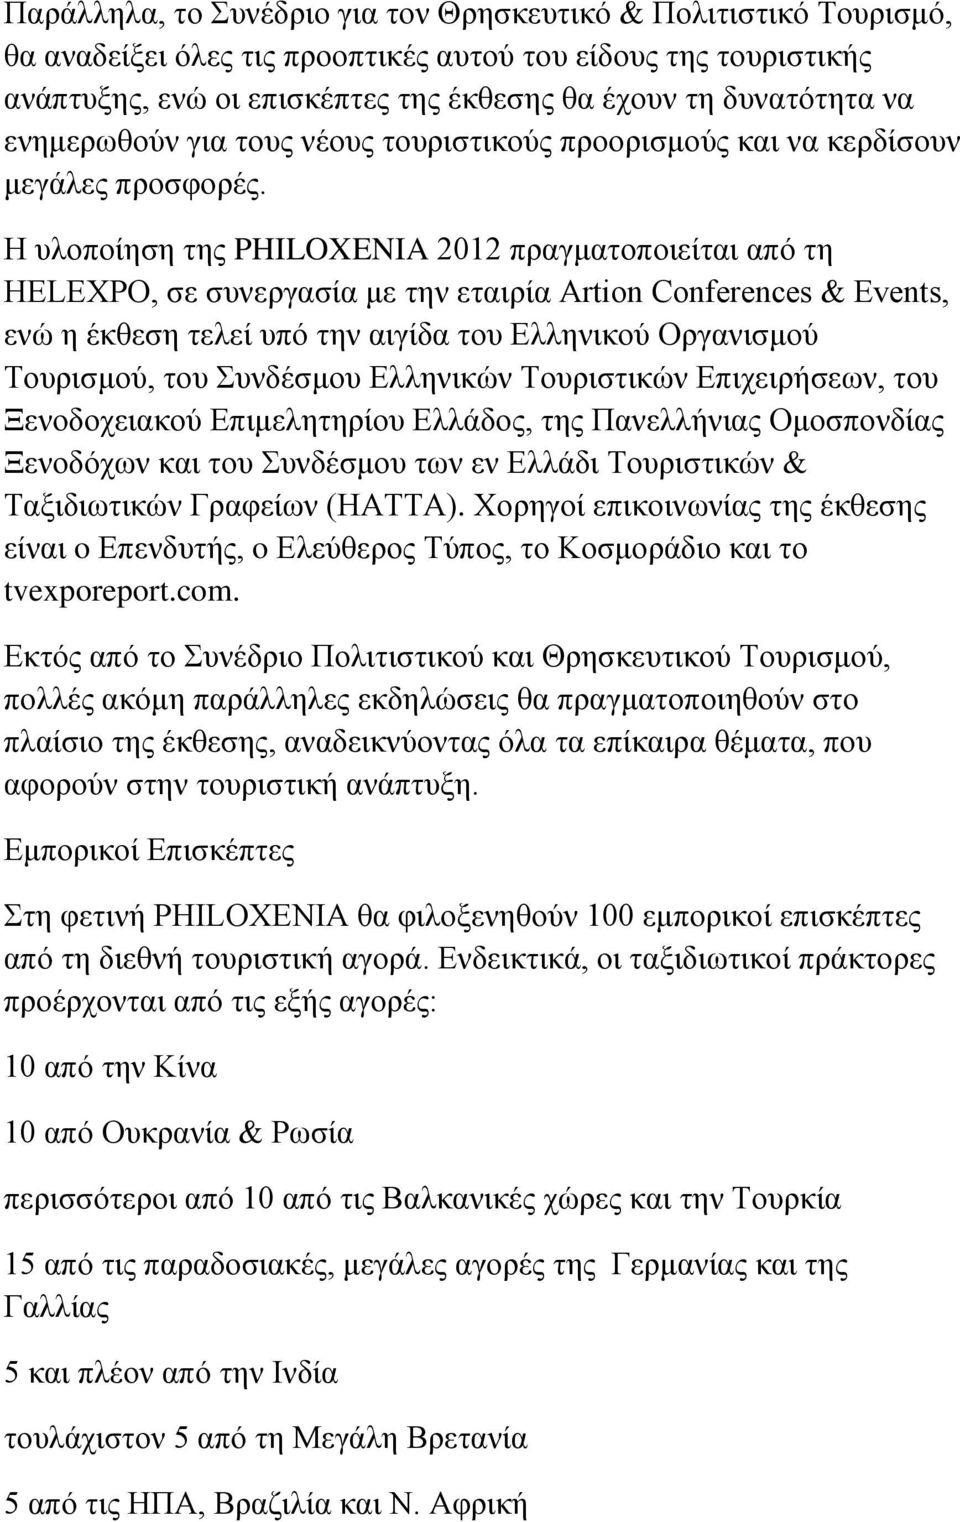 Η υλοποίηση της PHILOXENIA 2012 πραγματοποιείται από τη HELEXPO, σε συνεργασία με την εταιρία Artion Conferences & Events, ενώ η έκθεση τελεί υπό την αιγίδα του Ελληνικού Οργανισμού Τουρισμού, του